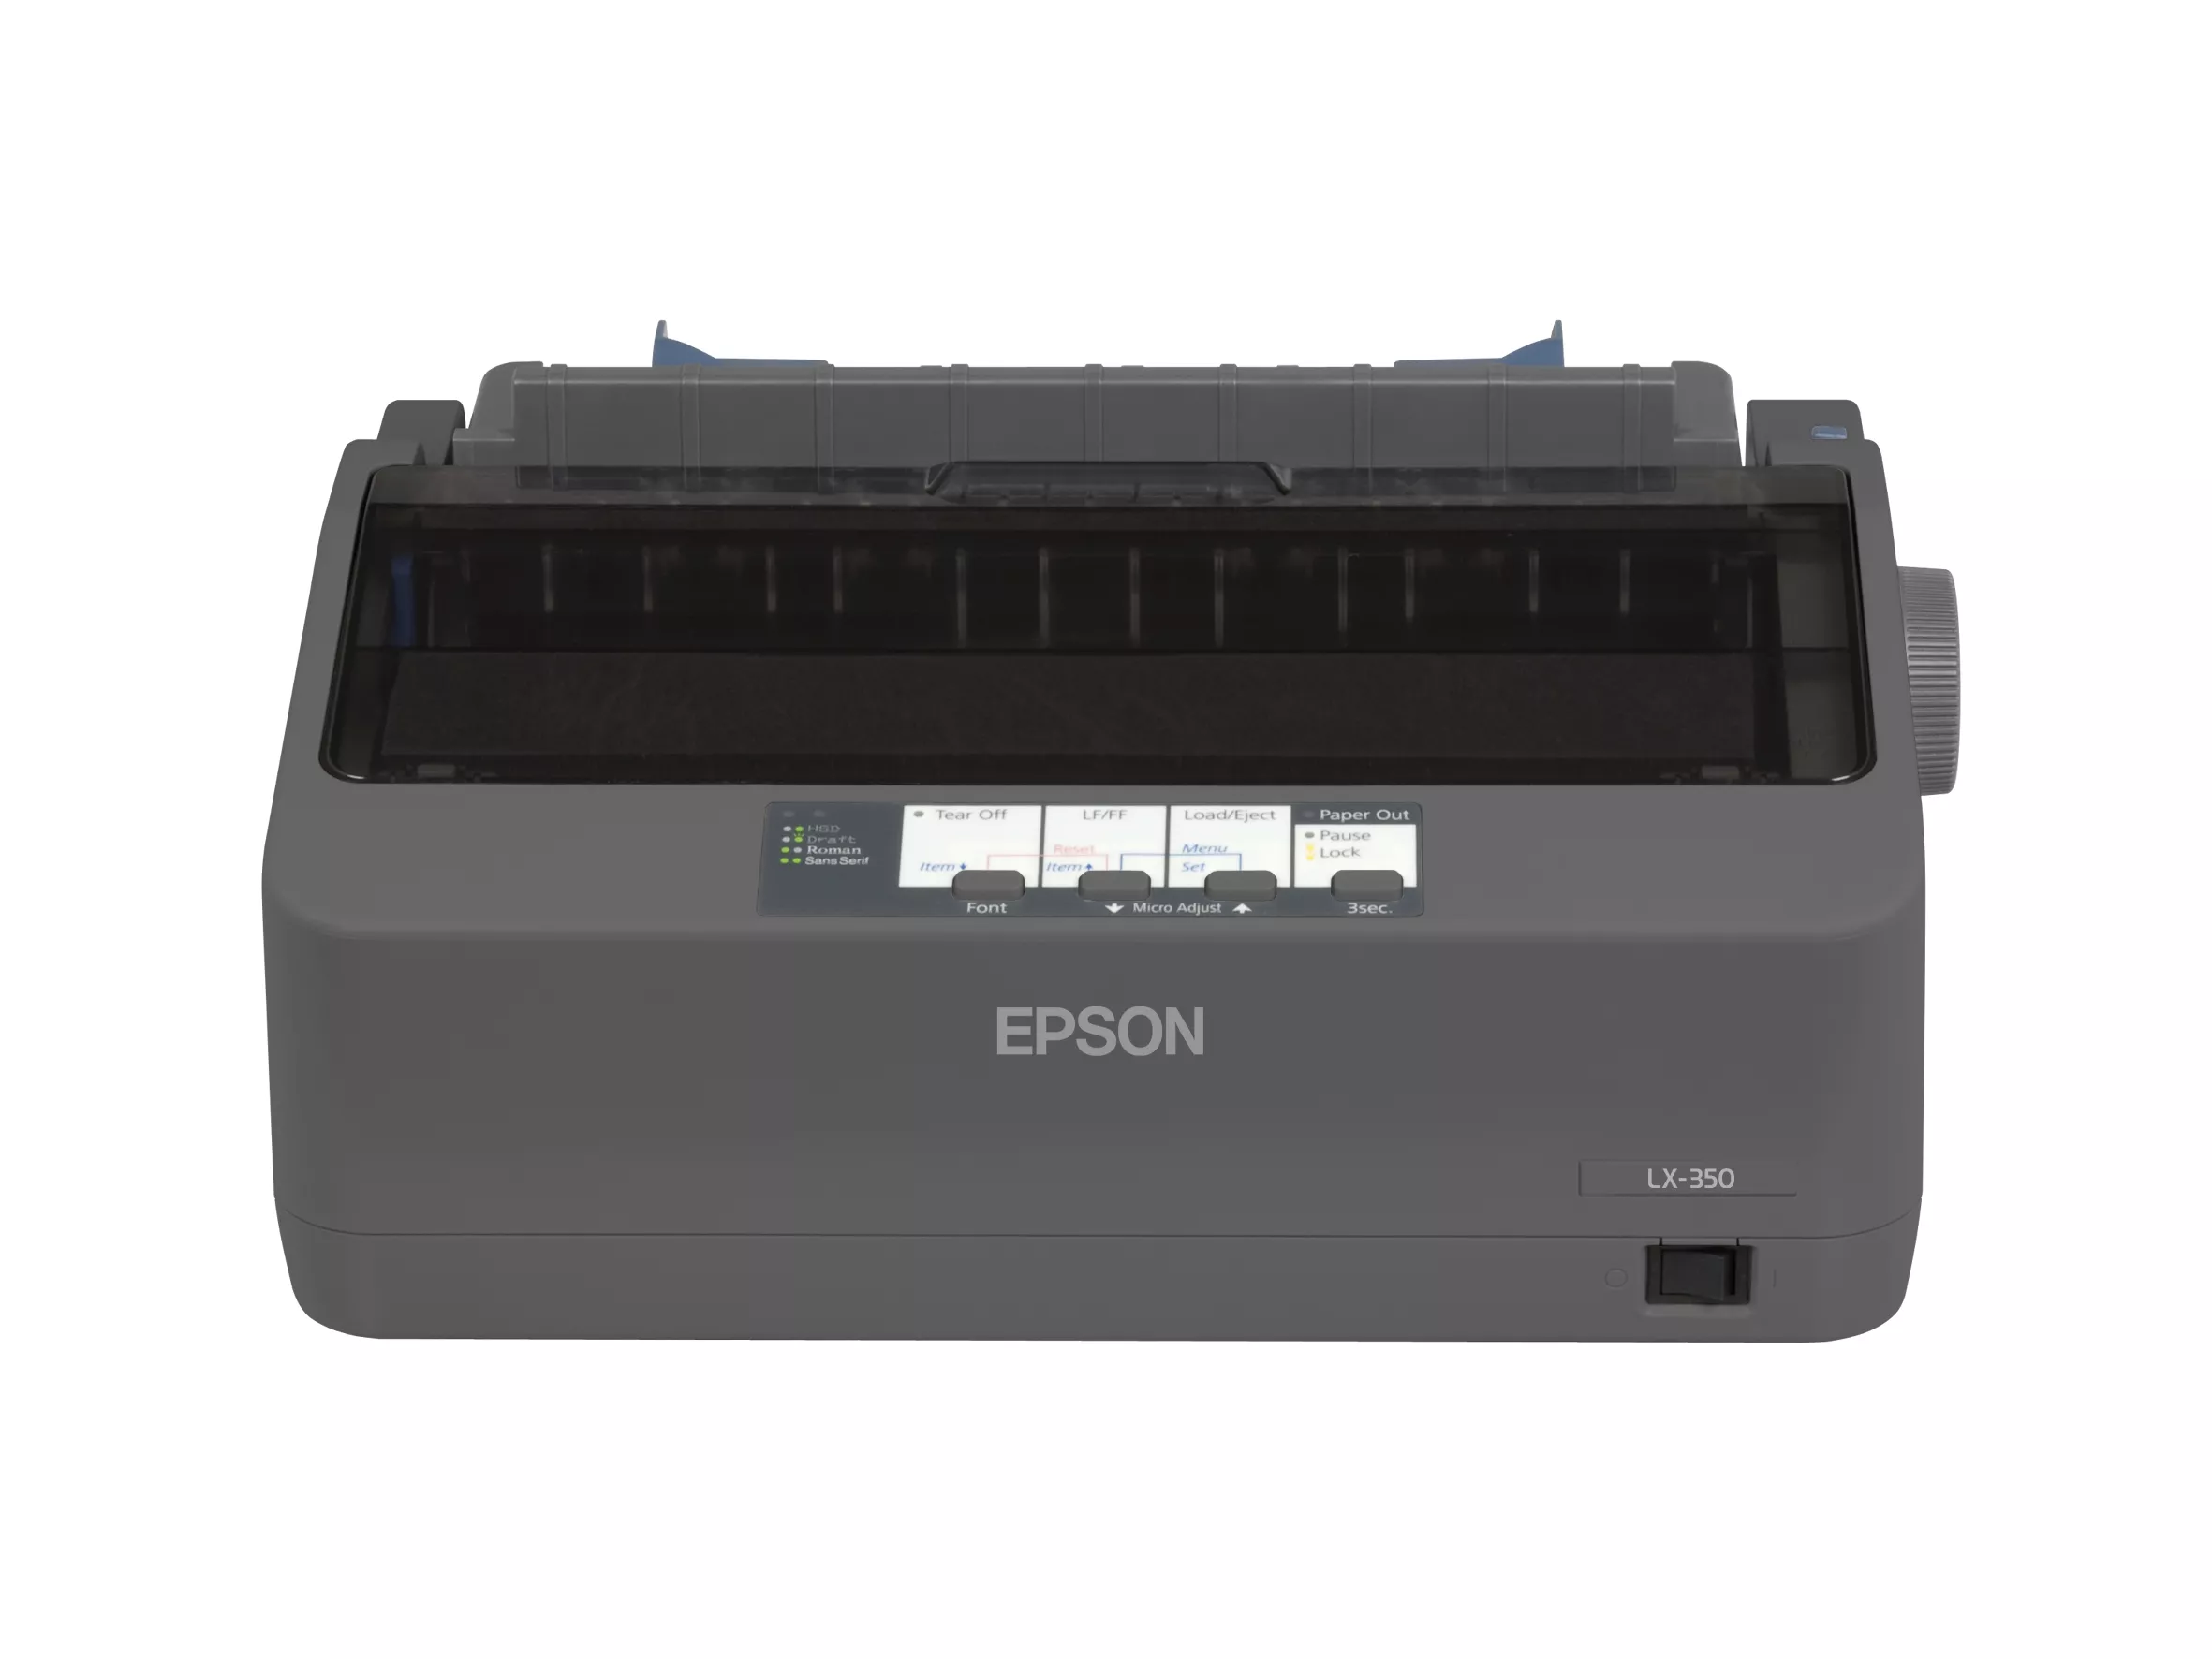 Vente EPSON LX 350 Printer Mono B/W dot-matrix 9 Epson au meilleur prix - visuel 4